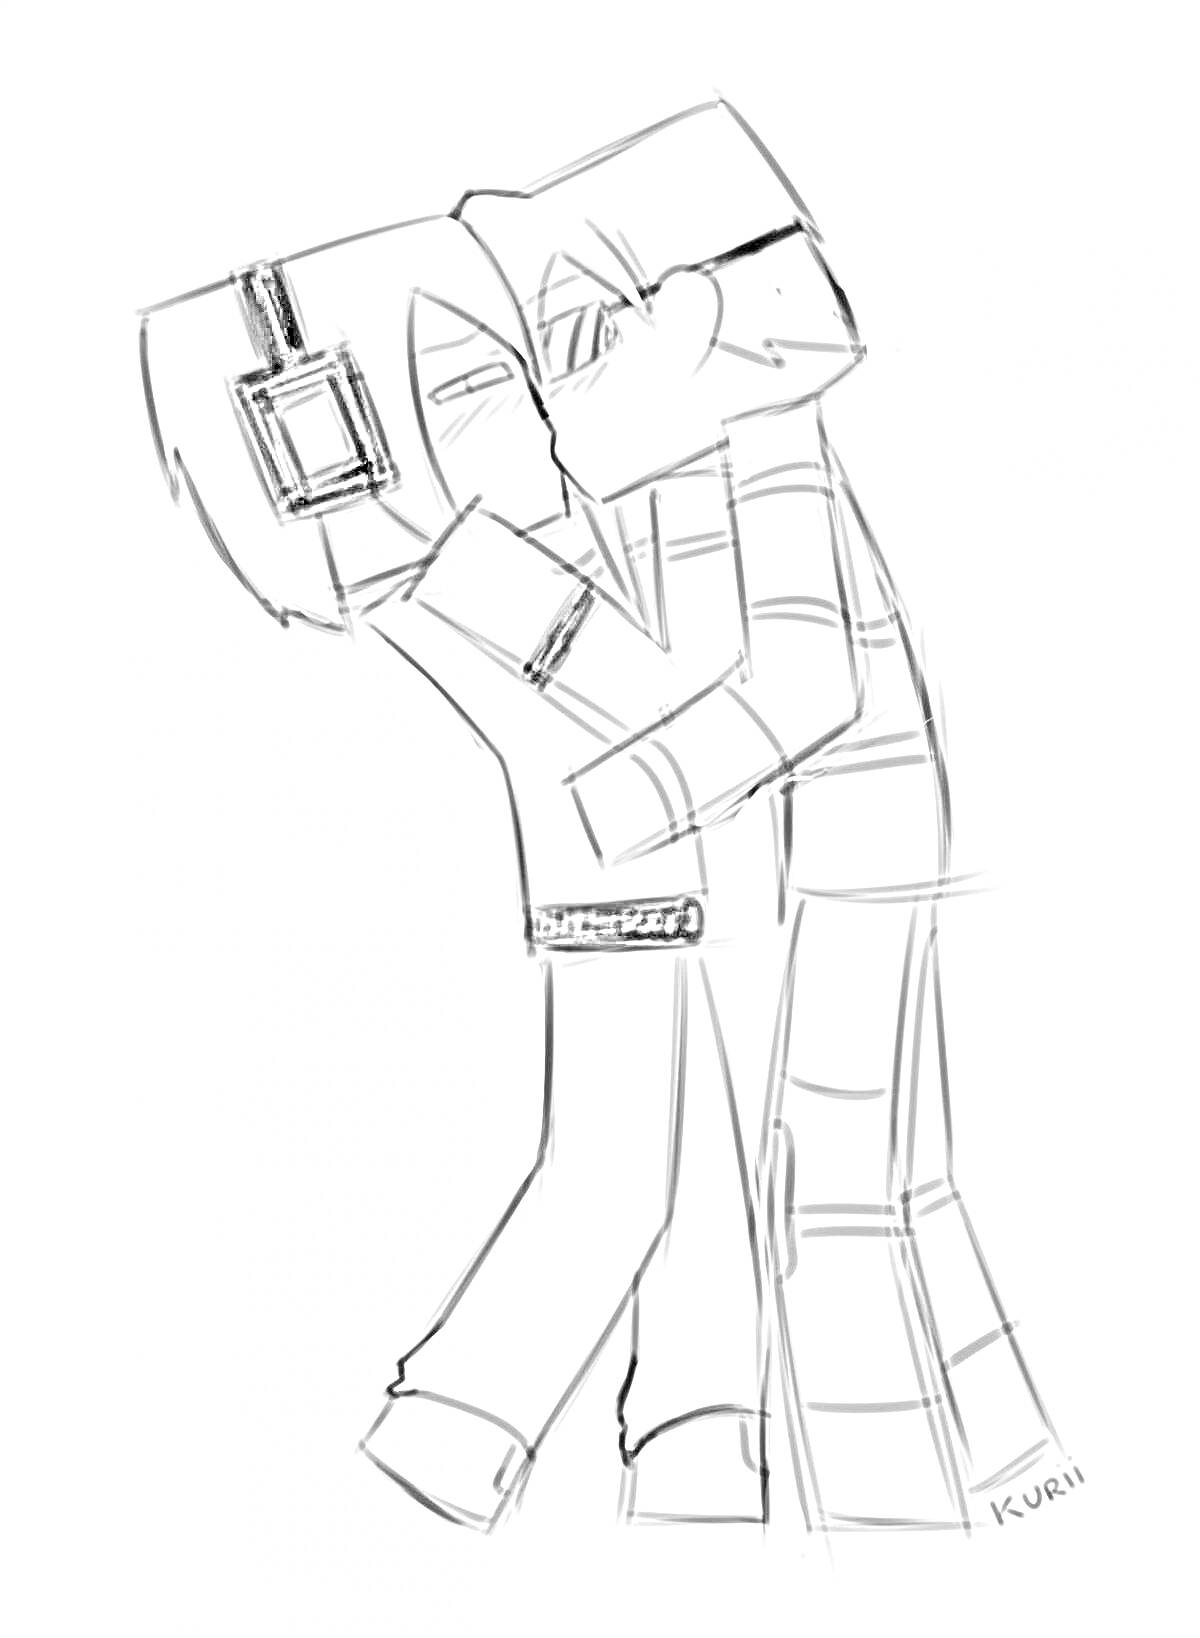 Два персонажа в стиле пиксель-арт из Minecraft, обнимающиеся.